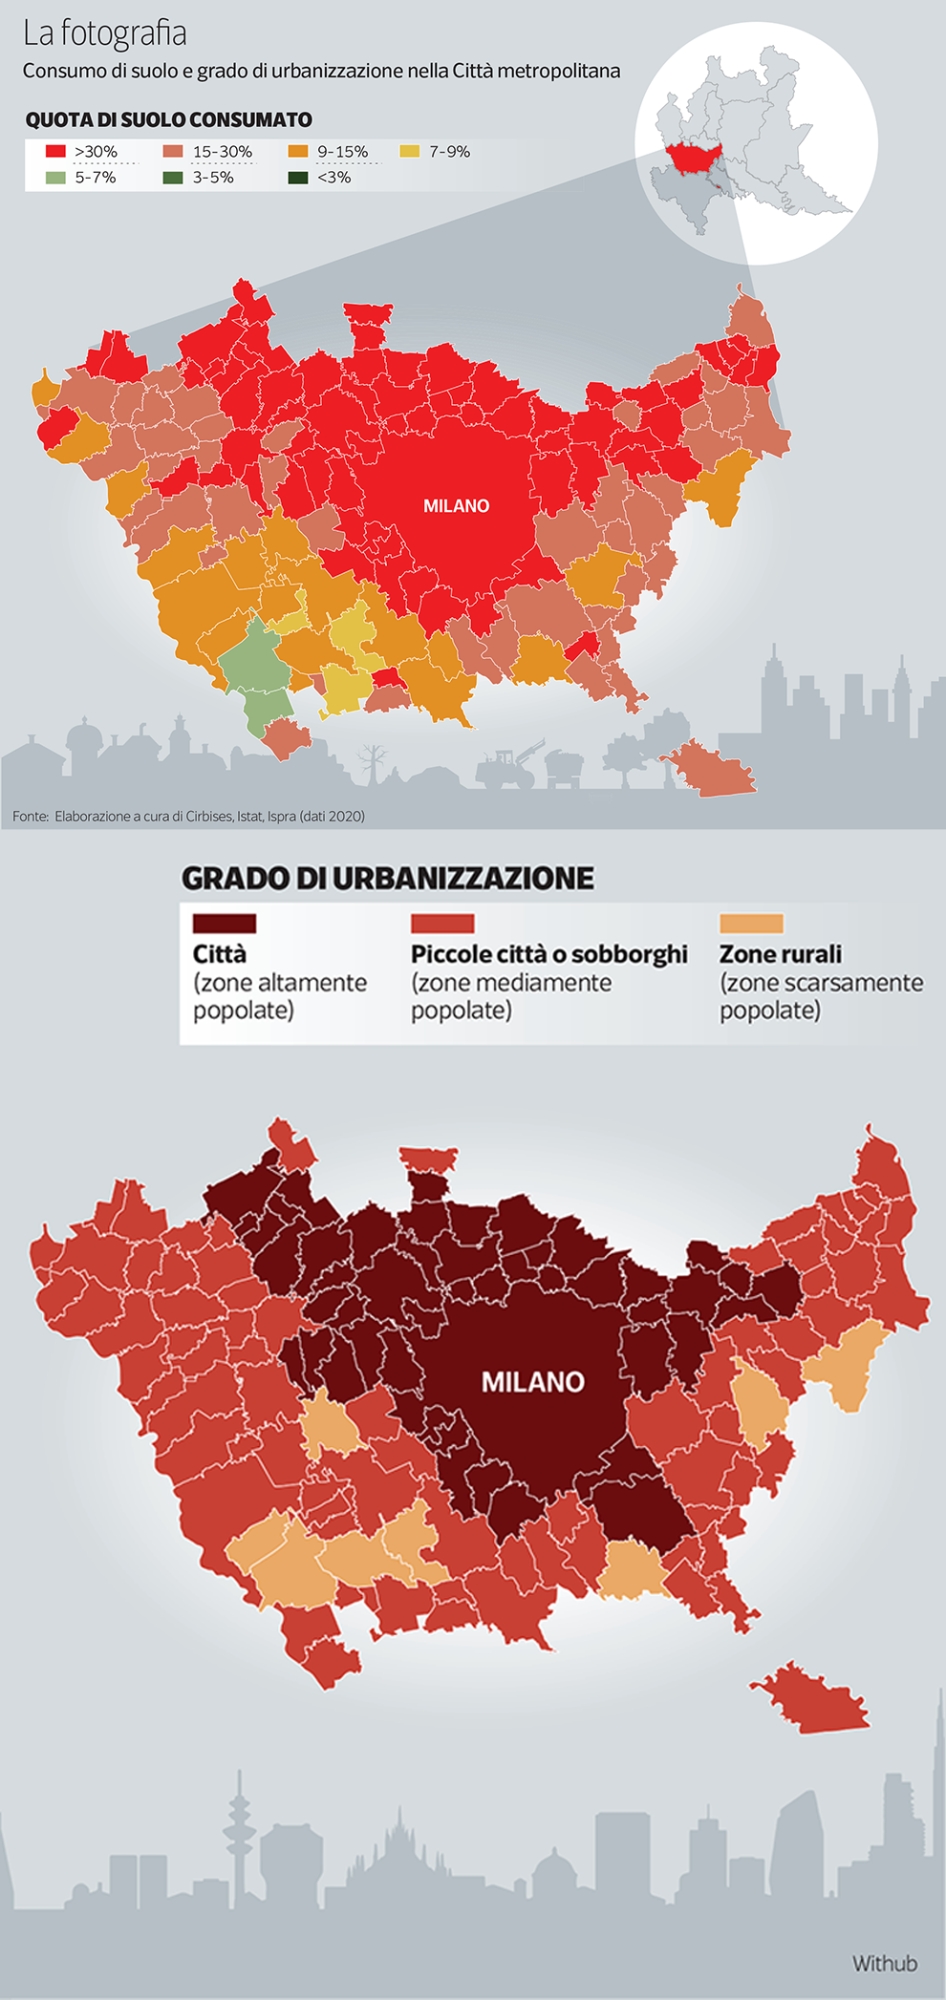 Il consumo di suolo nell'area della Città metropolitana di Milano